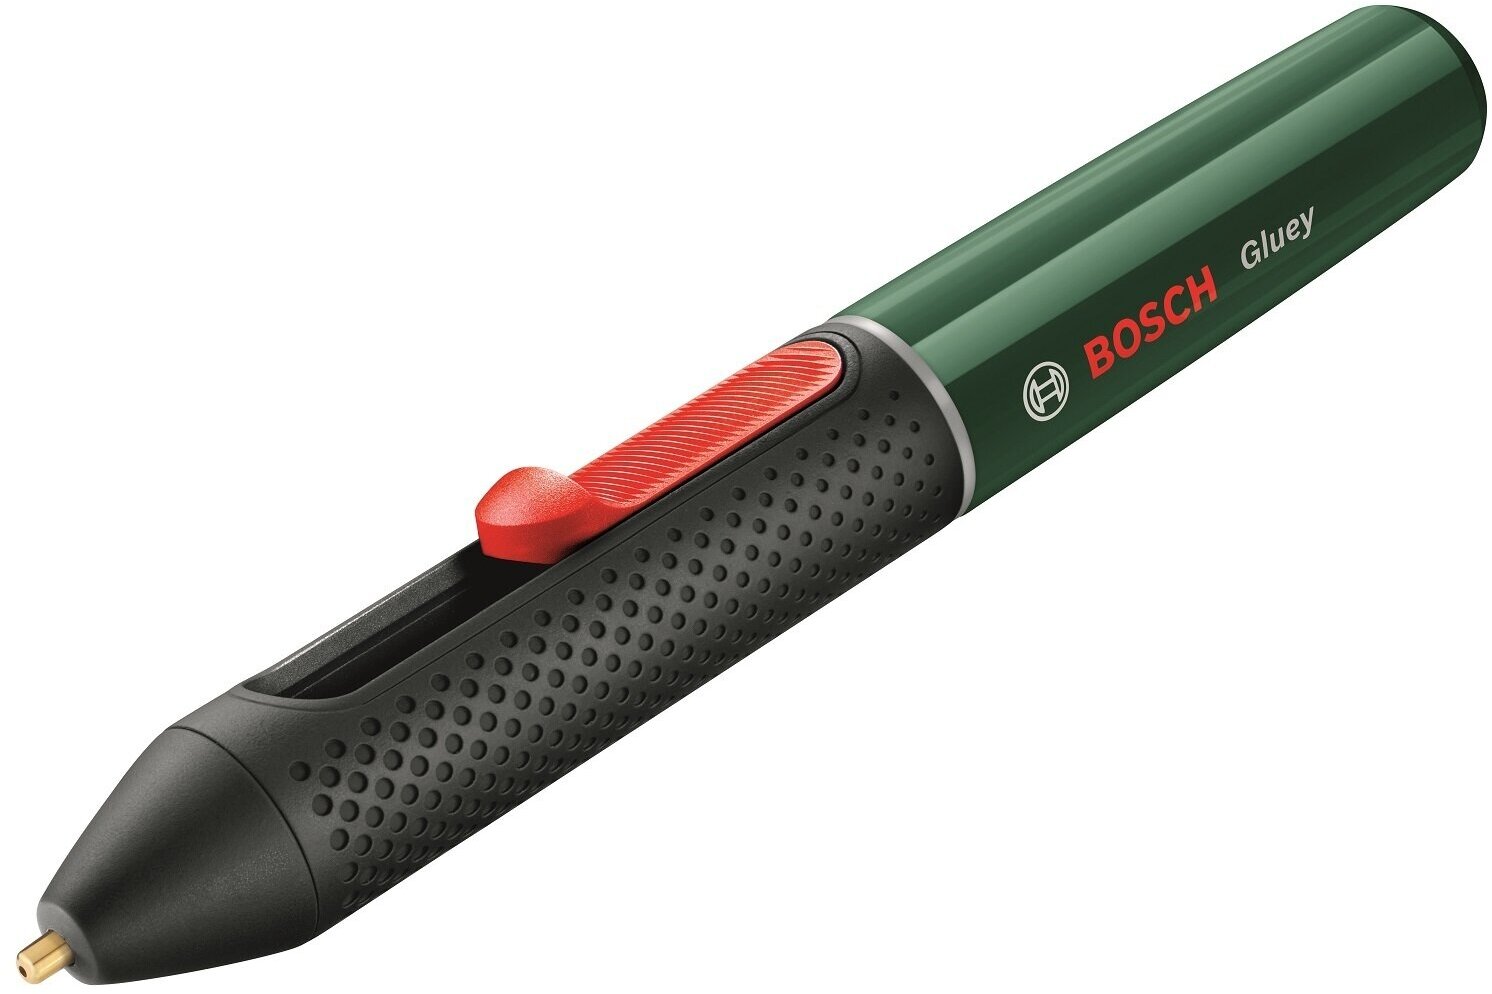 Аккумуляторная клеевая ручка BOSCH Gluey evergreen